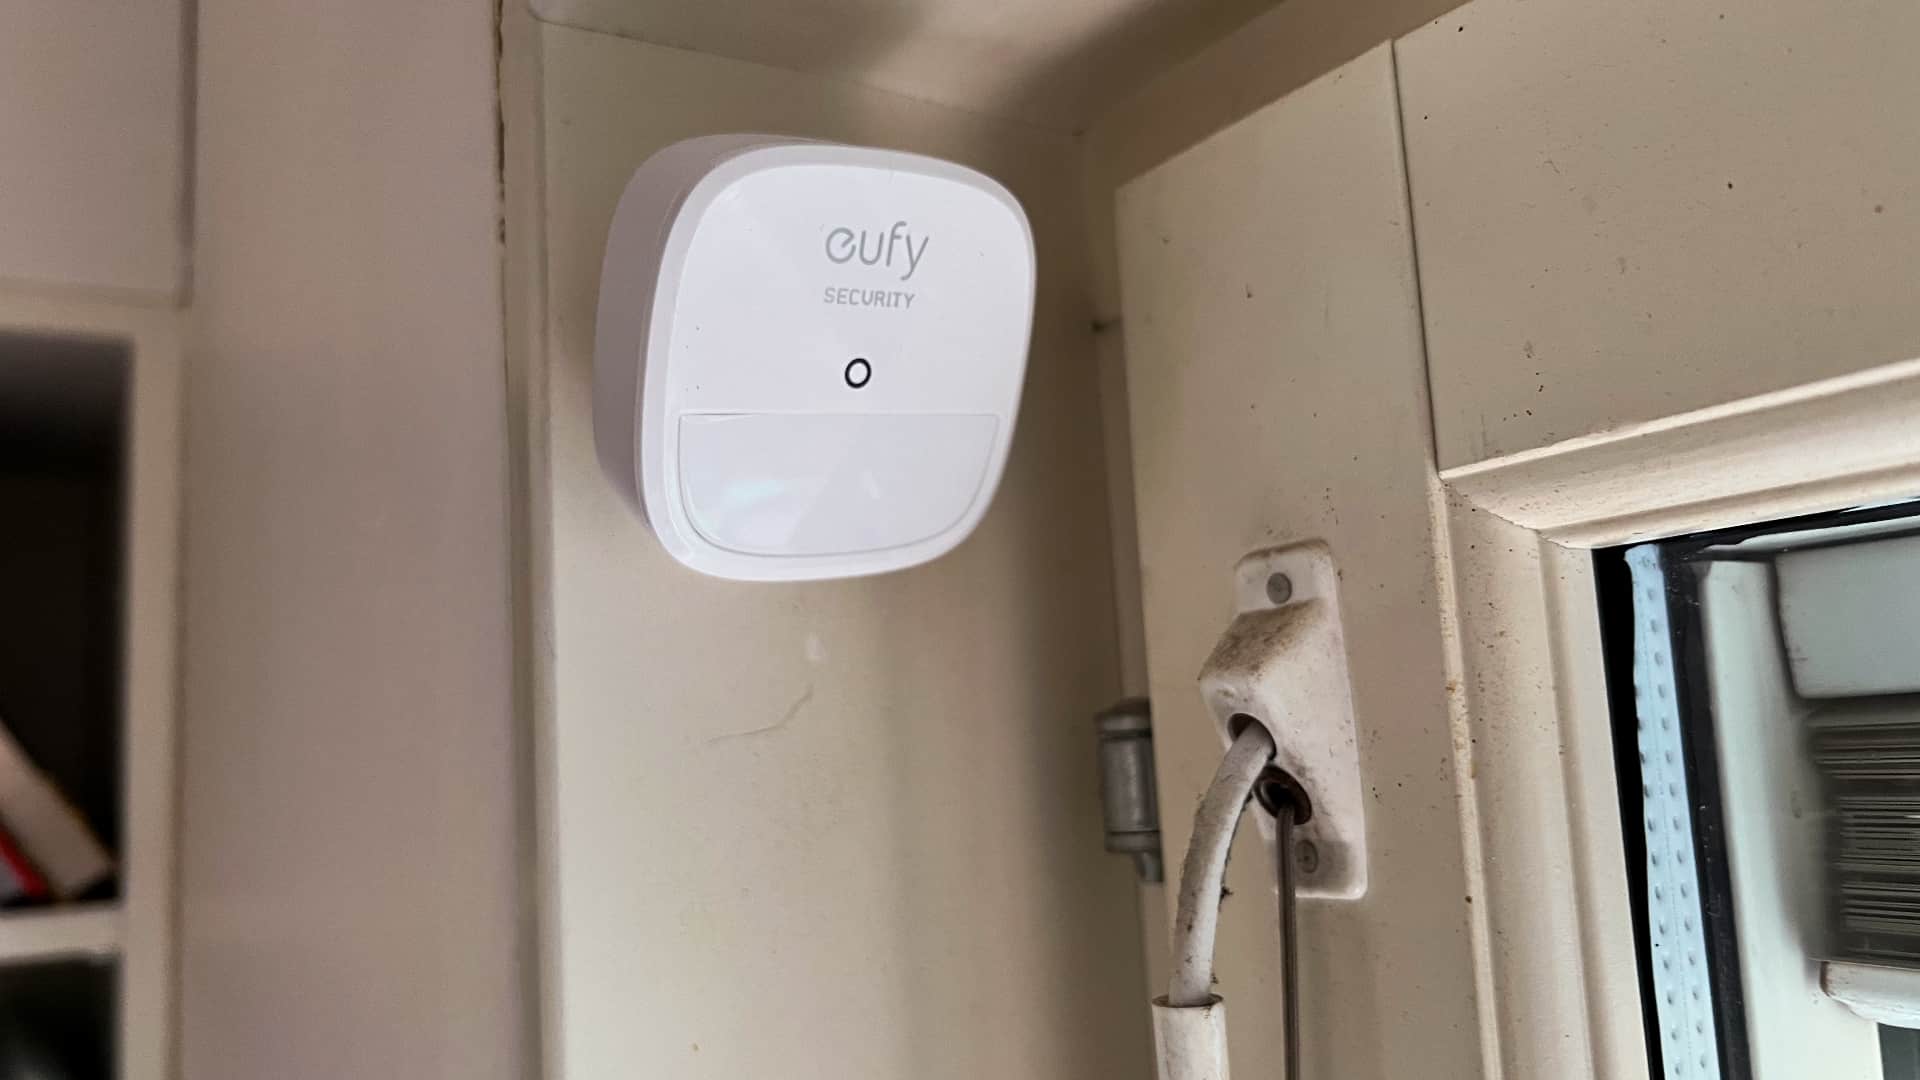 Eufy Security Home alarm kit